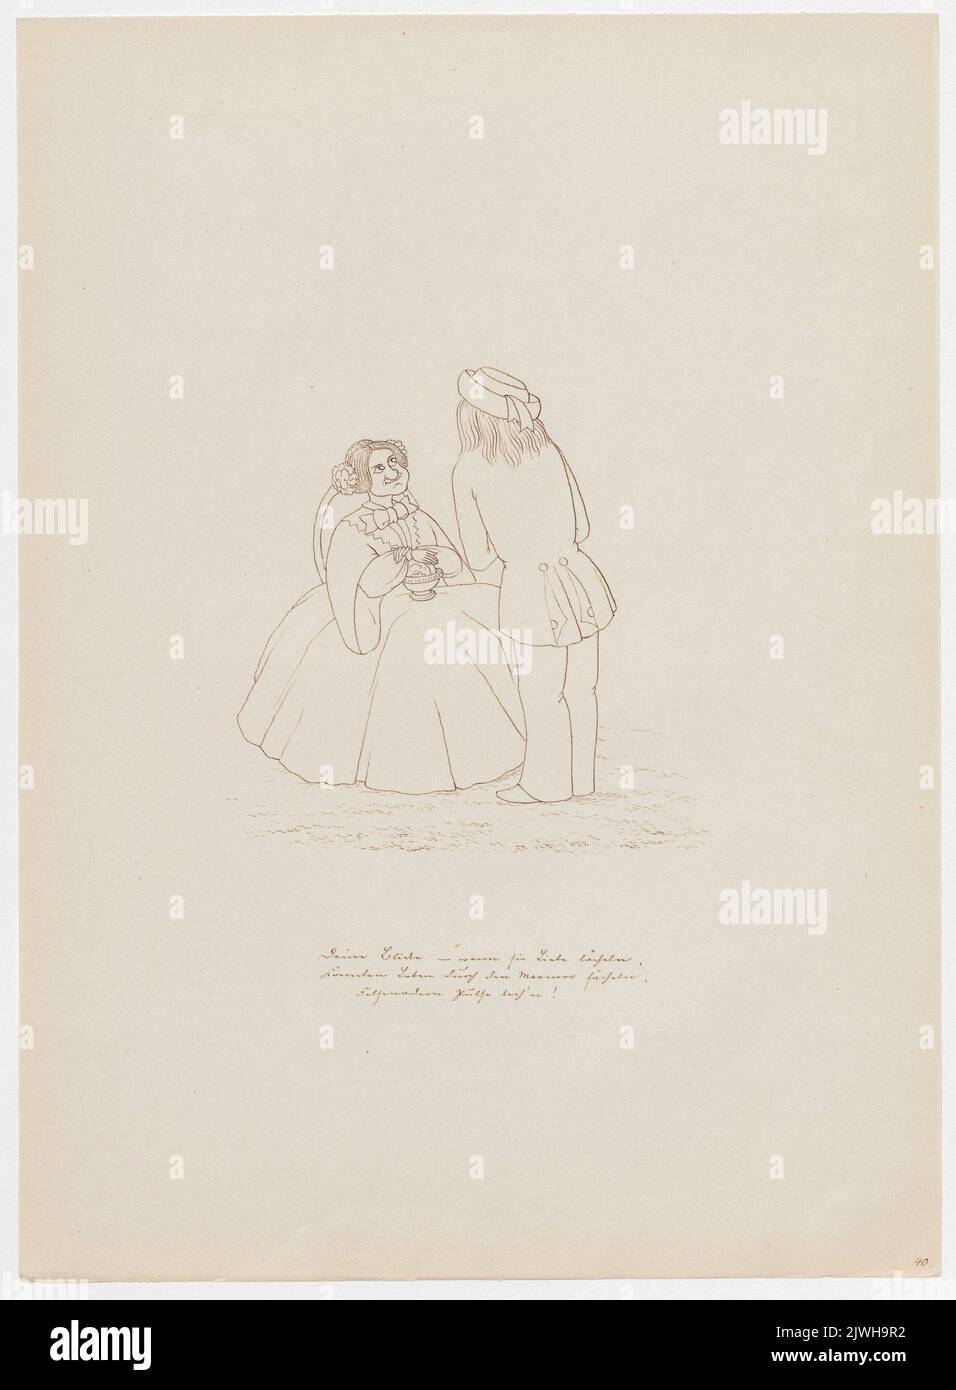 'Deine Blicke - wenn sie Liebe lächeln...'. Winkler, Karl Gustav Adolf (1810-1893), draughtsman, cartoonist Stock Photo